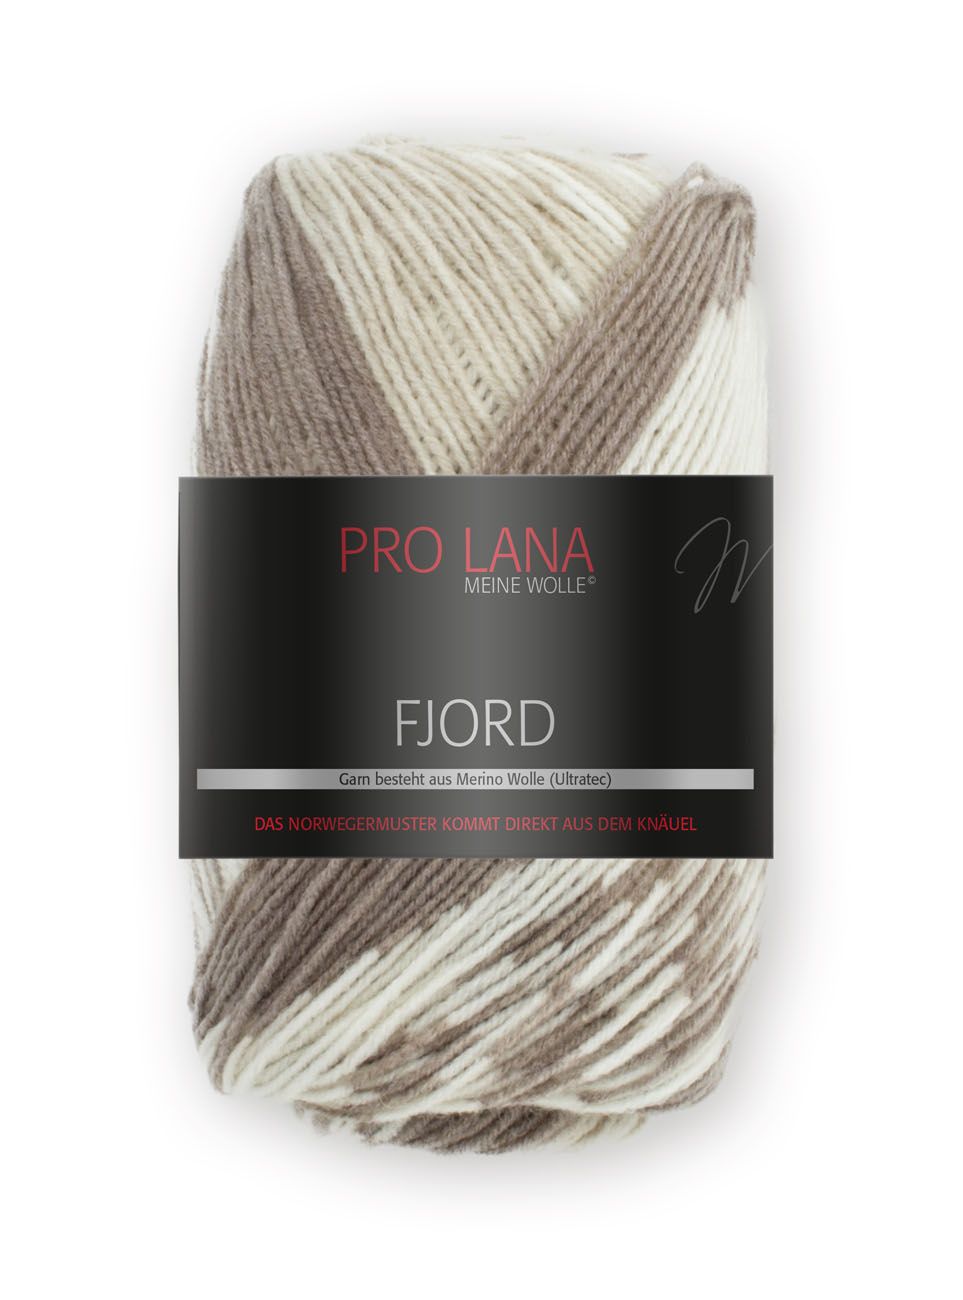 Pro Lana Fjord 100g - beige / braun / weiß 81